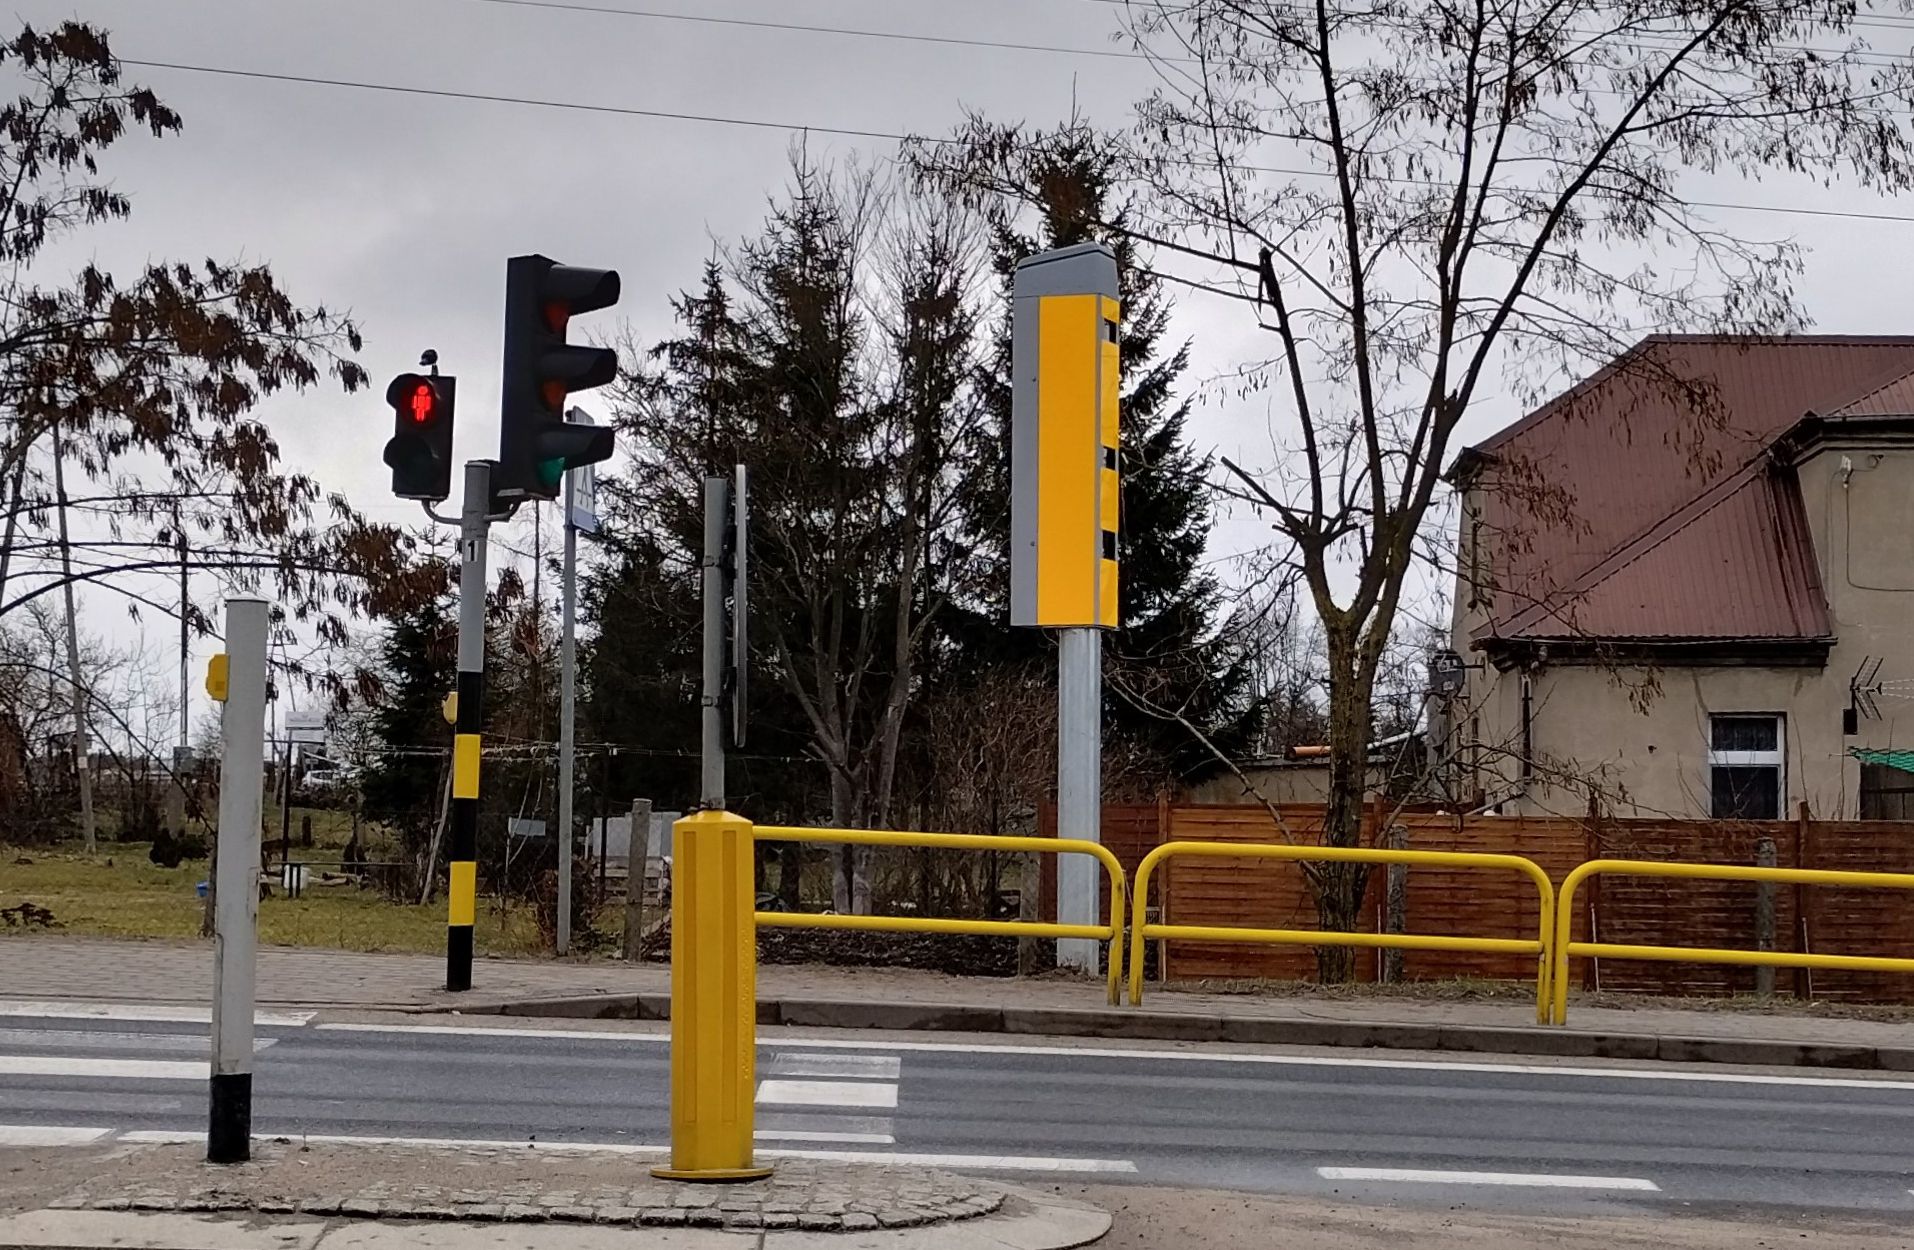 Nowe fotoradary staną przy drodze do Wrocławia